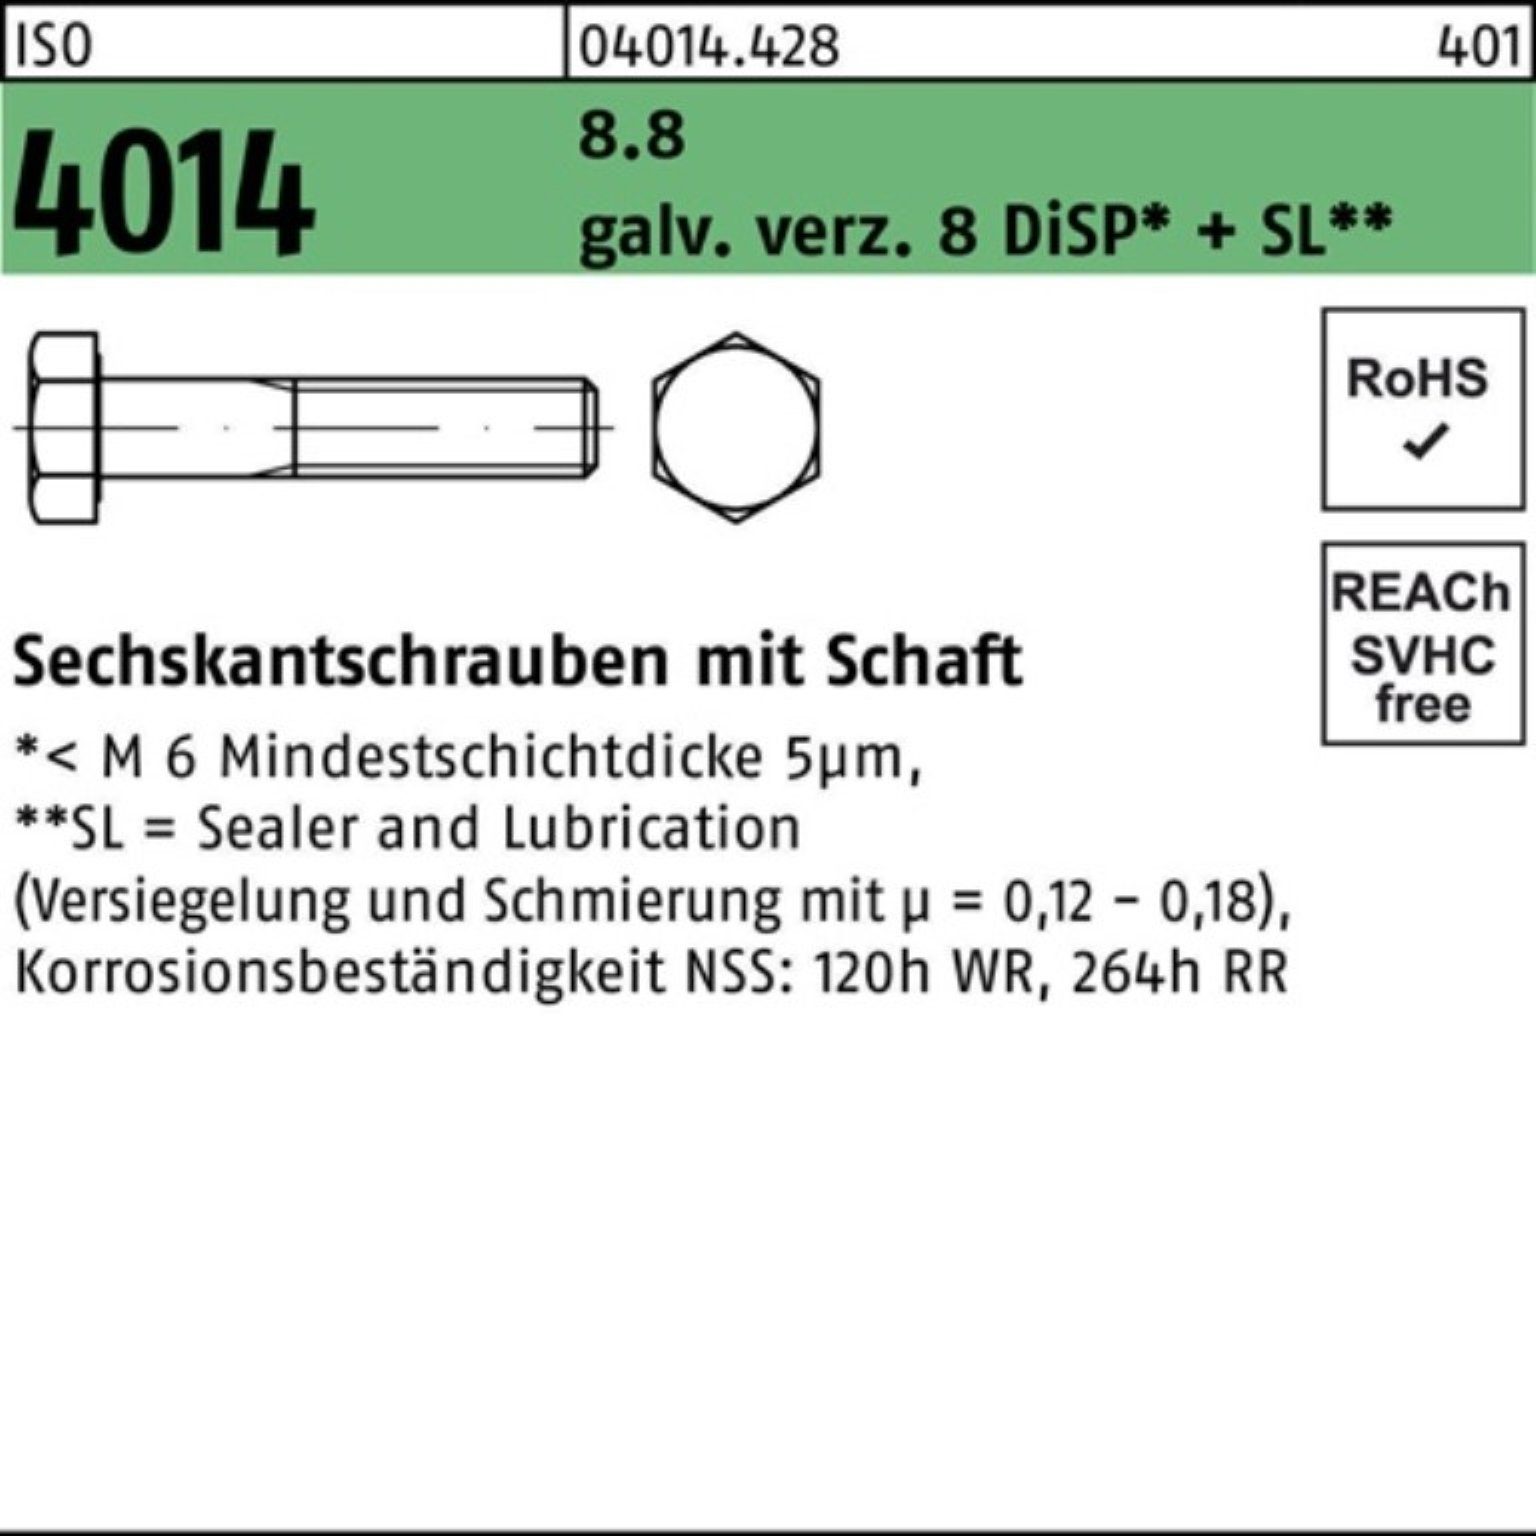 Sechskantschraube Bufab Pack 8.8 100er 4014 Schaft ISO Sechskantschraube M16x320 galv.verz. 8